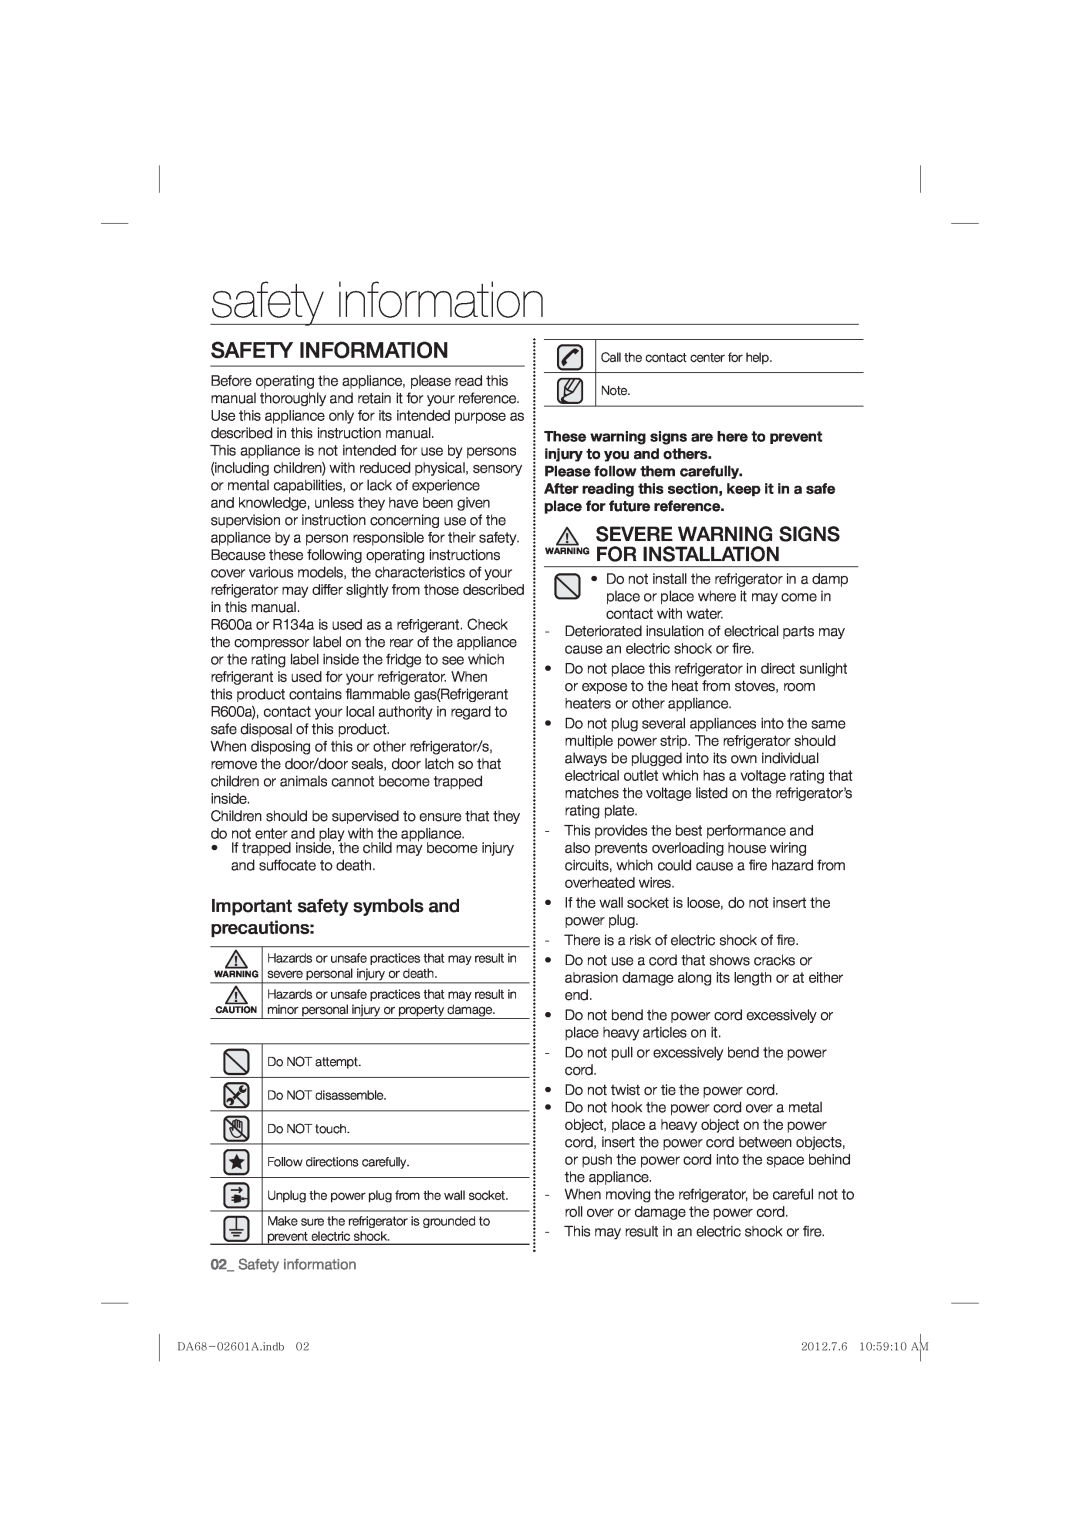 Samsung RF263BEAESR, RF263BEAEWW safety information, Safety Information, Severe Warning Signs Warning For Installation 